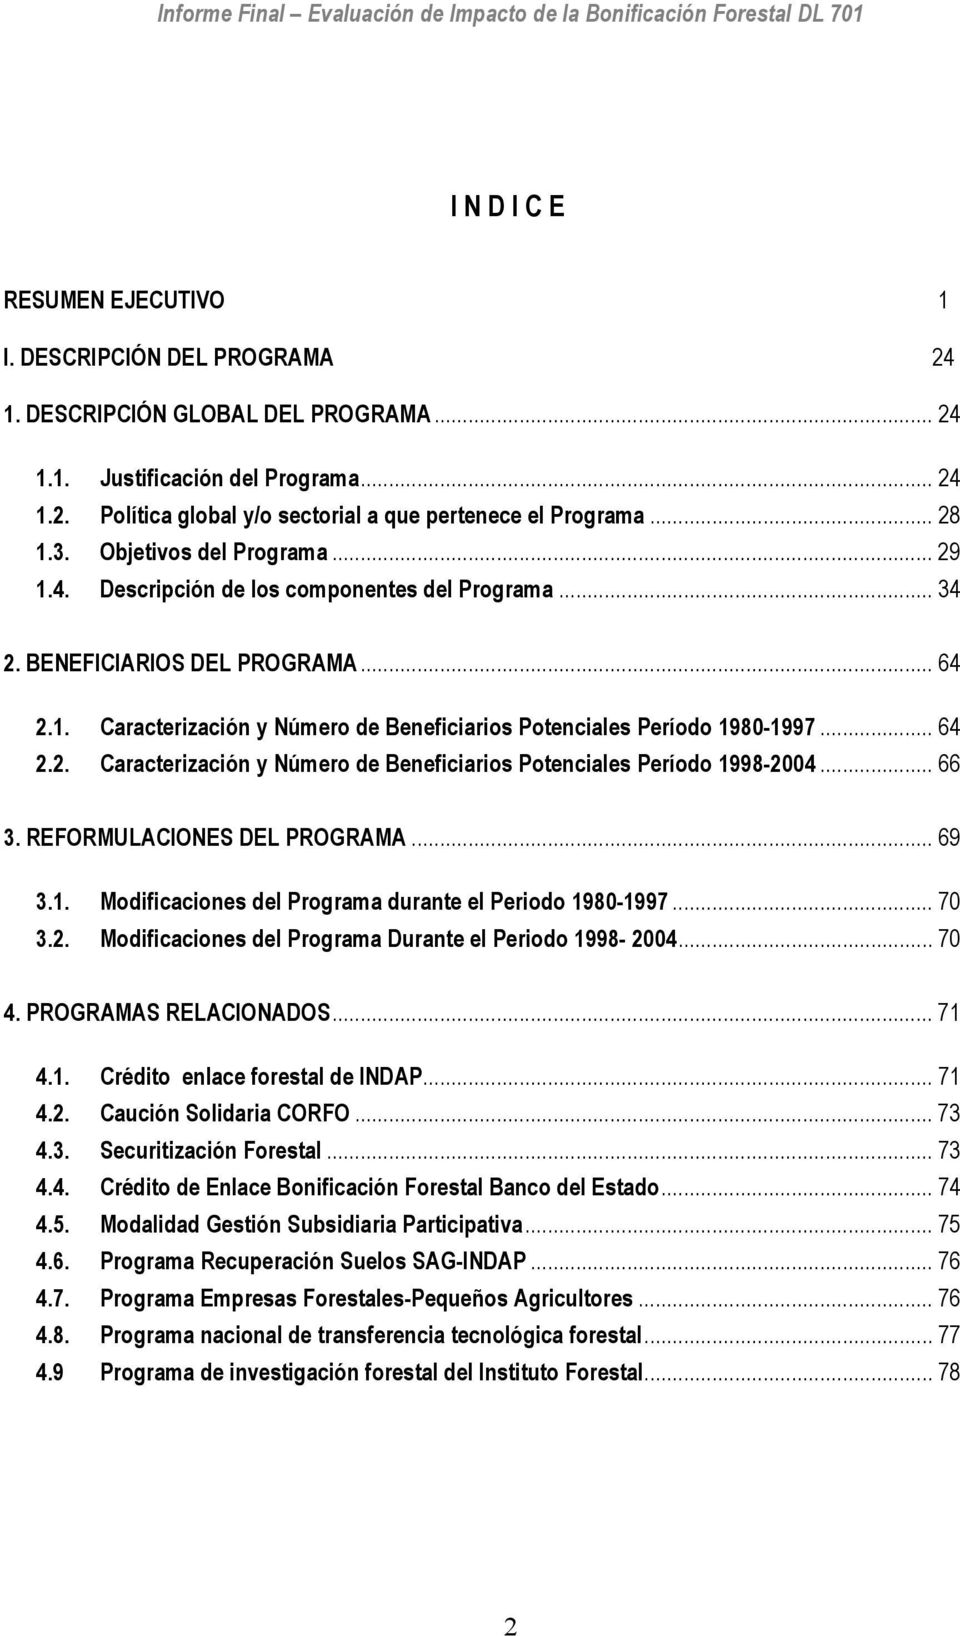 .. 64 2.2. Caracterización y Número de Beneficiarios Potenciales Período 1998-2004... 66 3. REFORMULACIONES DEL PROGRAMA... 69 3.1. Modificaciones del Programa durante el Periodo 1980-1997... 70 3.2. Modificaciones del Programa Durante el Periodo 1998-2004.